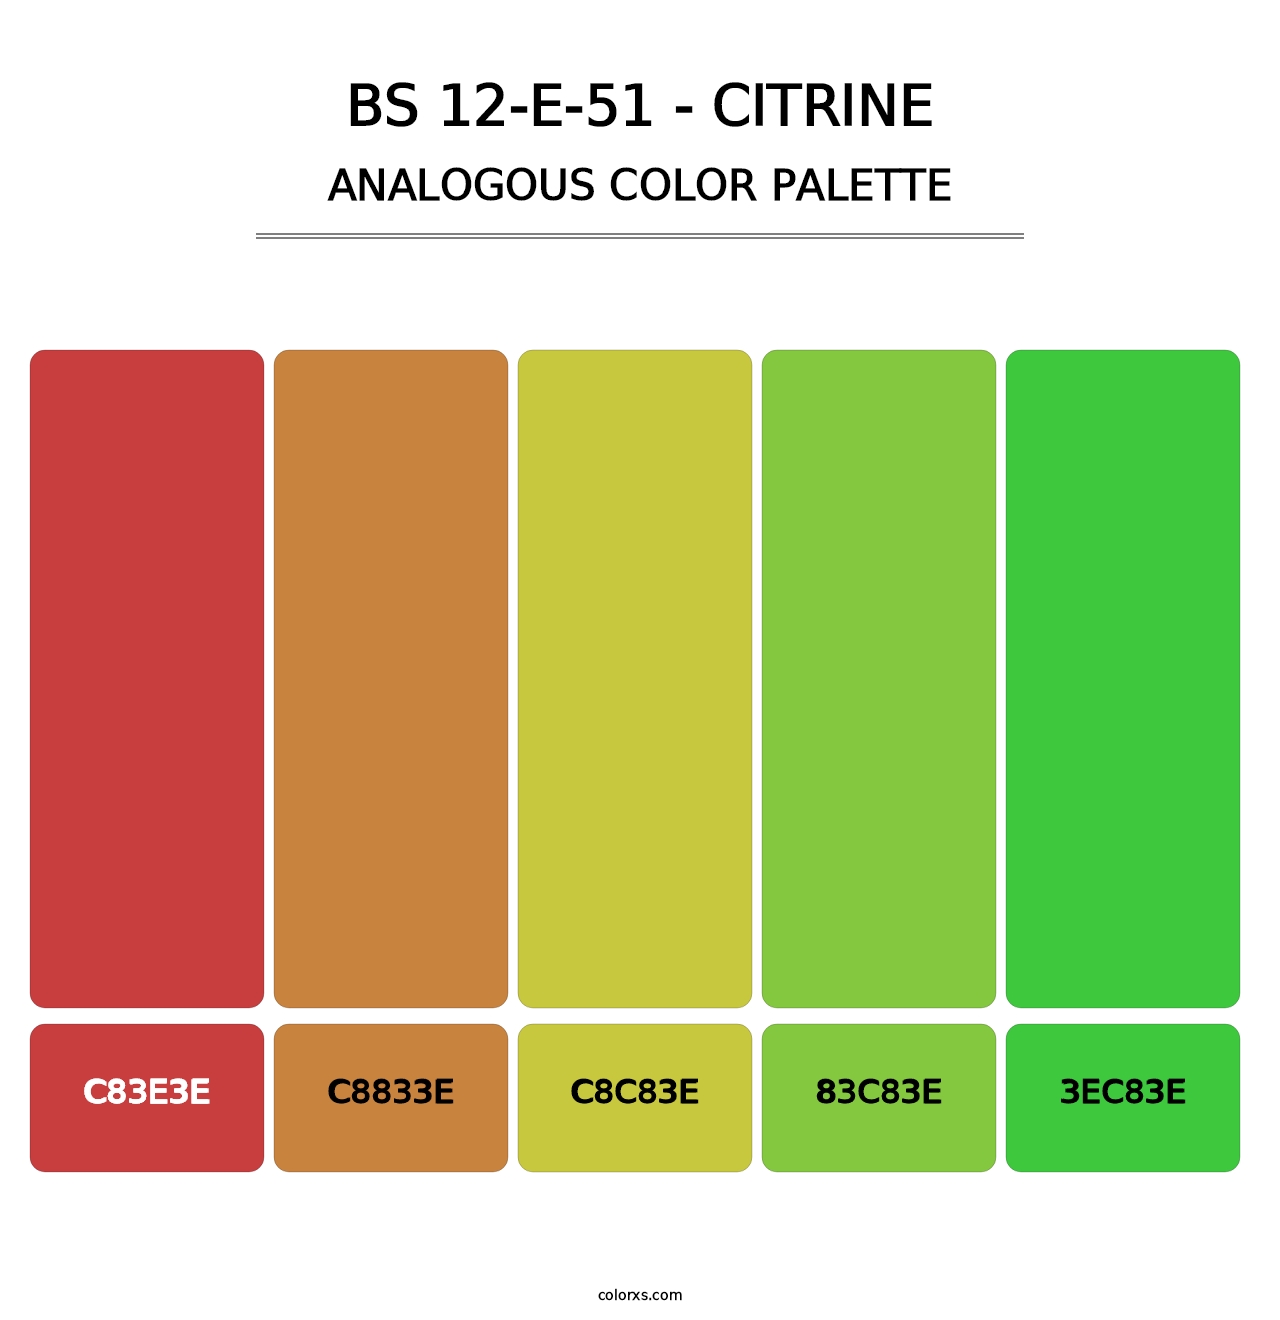 BS 12-E-51 - Citrine - Analogous Color Palette